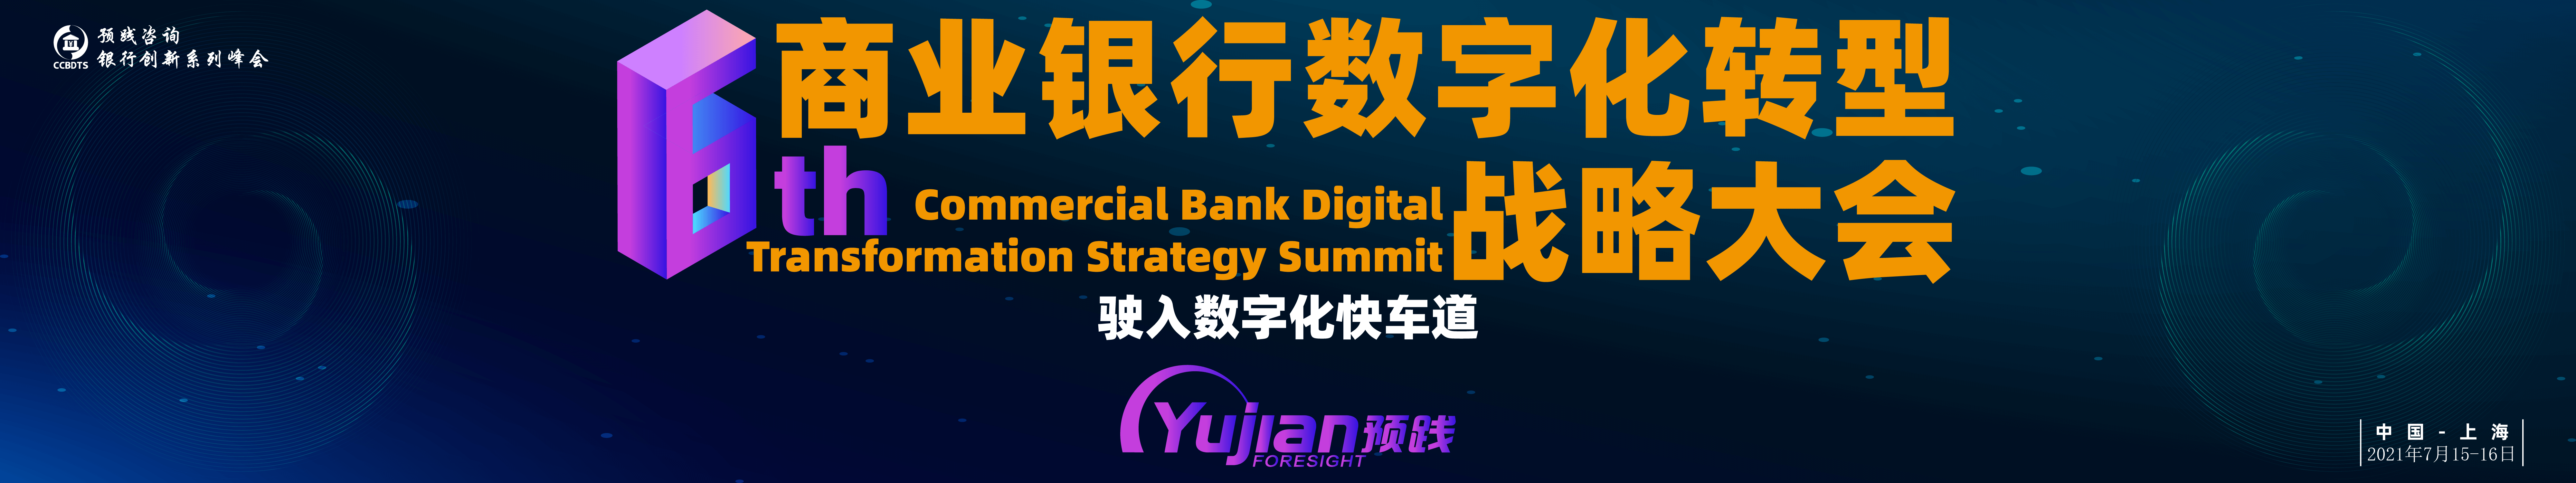 第六届商业银行数字化转型战略大会